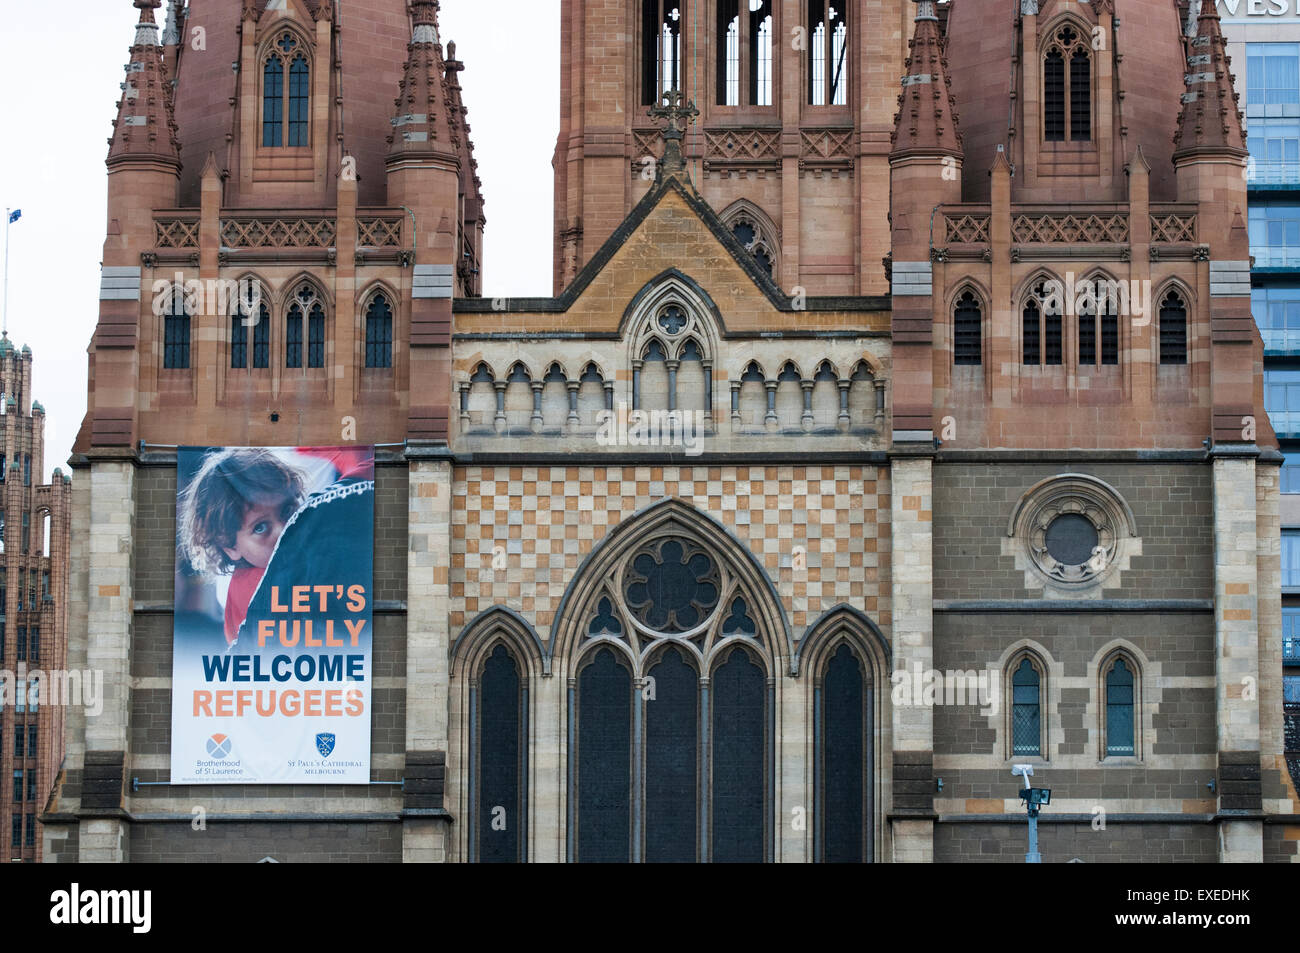 Bannière sur la Cathédrale St Paul, Melbourne, Australie protestations politiques intransigeants à l'égard des réfugiés Banque D'Images